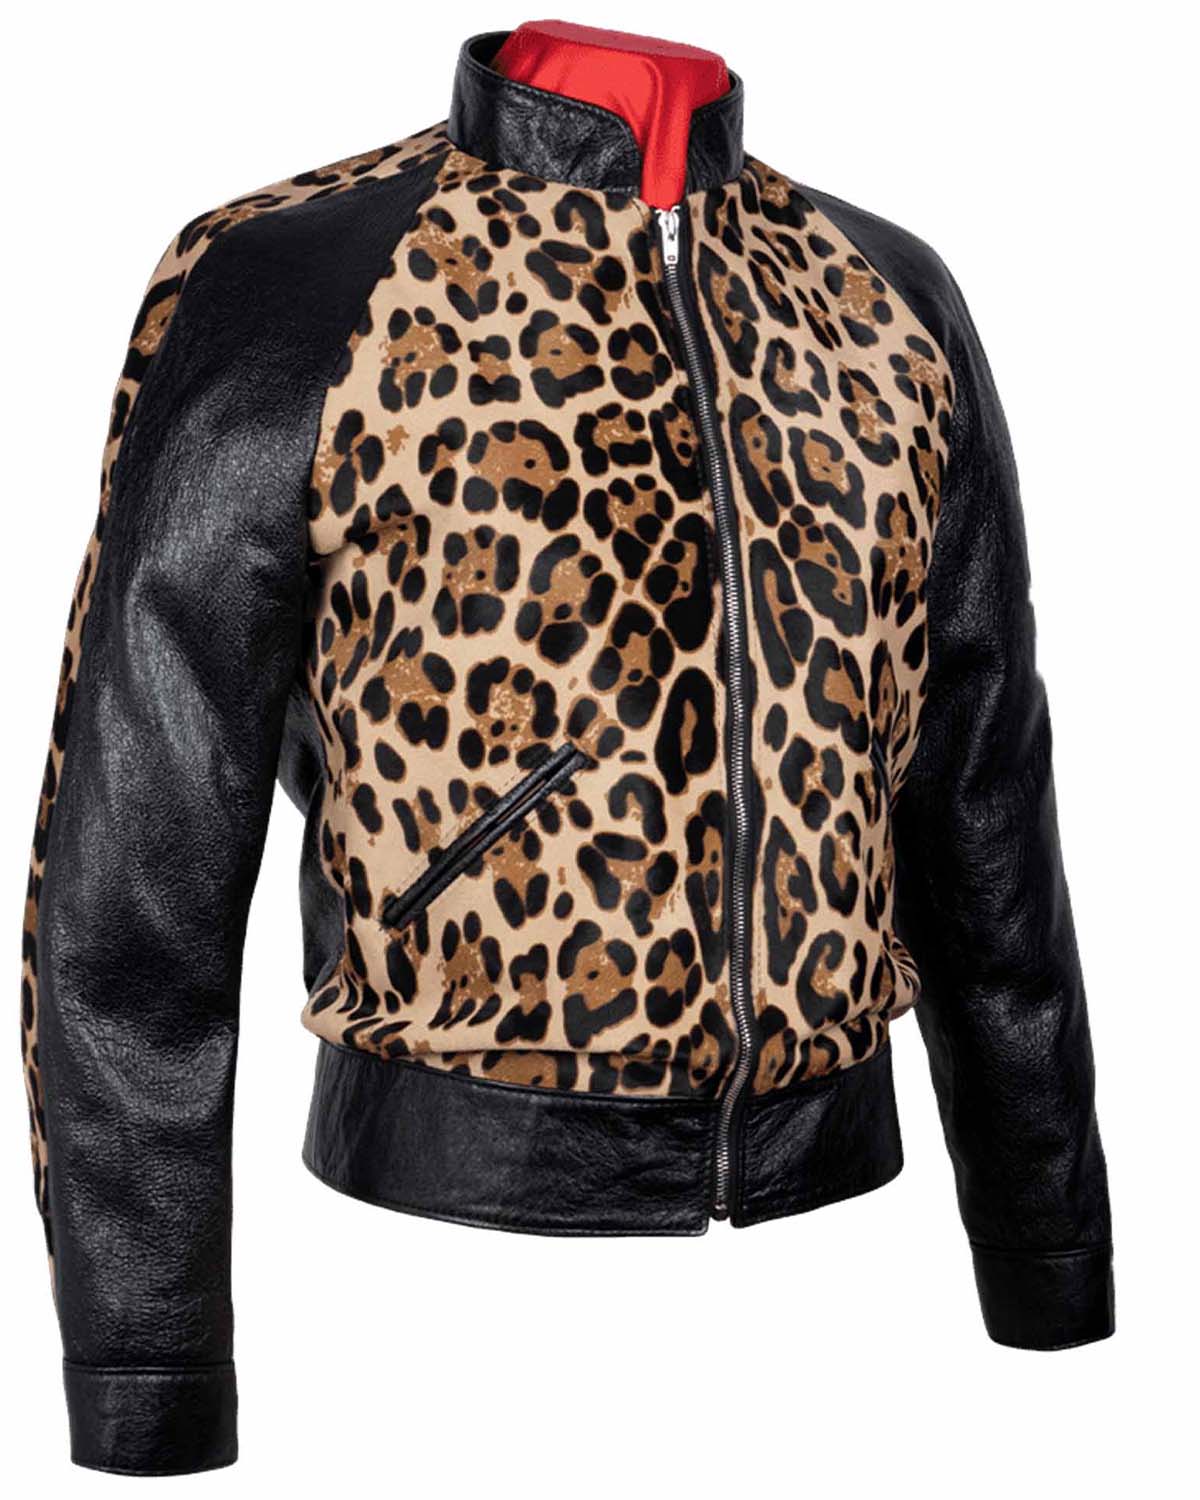 Elite Paradise Garage Jacket Cheetah Design Leather Jacket